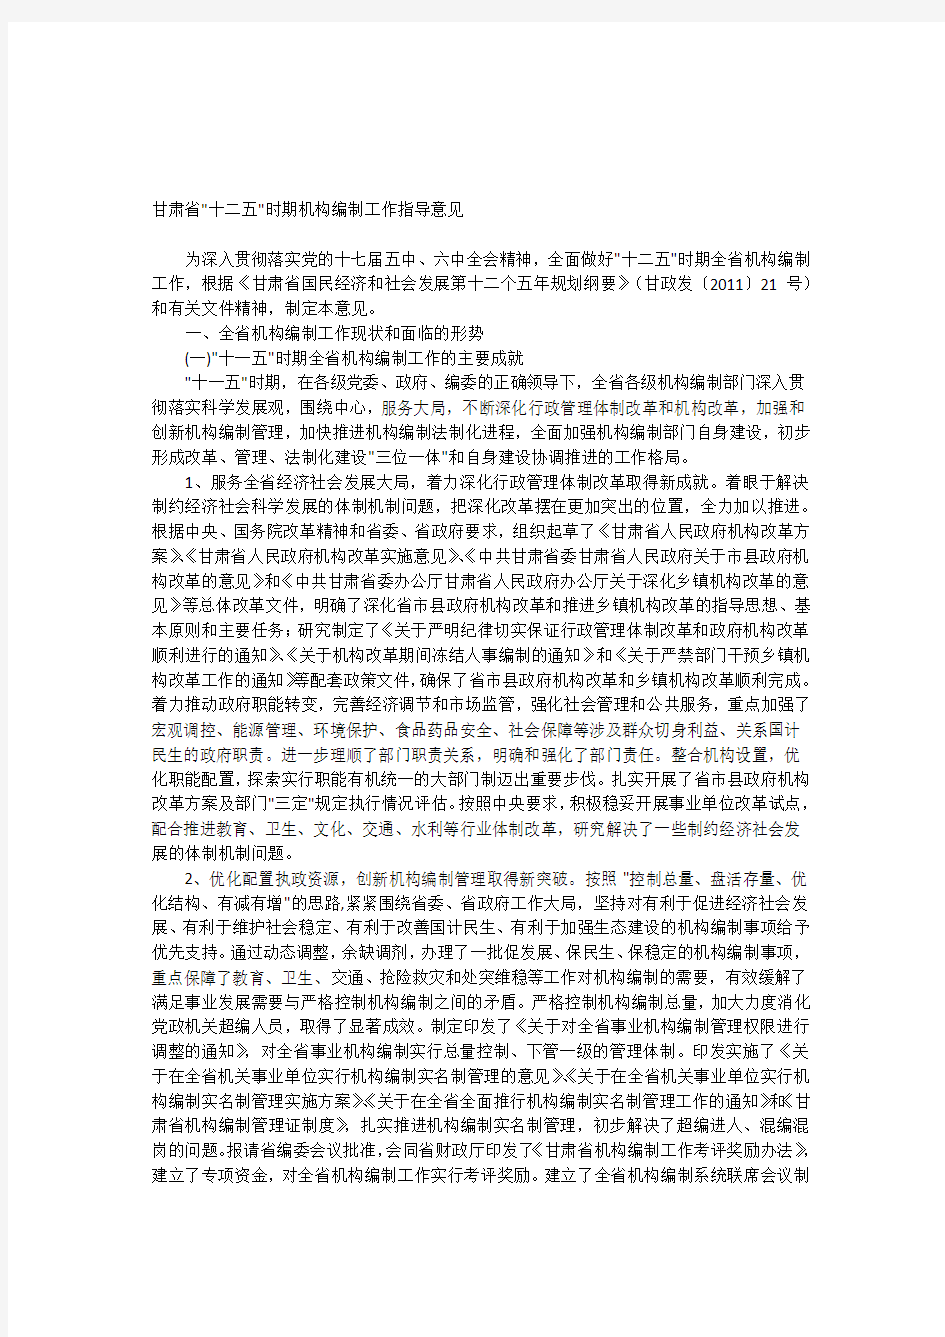 甘肃省“十二五”时期机构编制工作指导意见